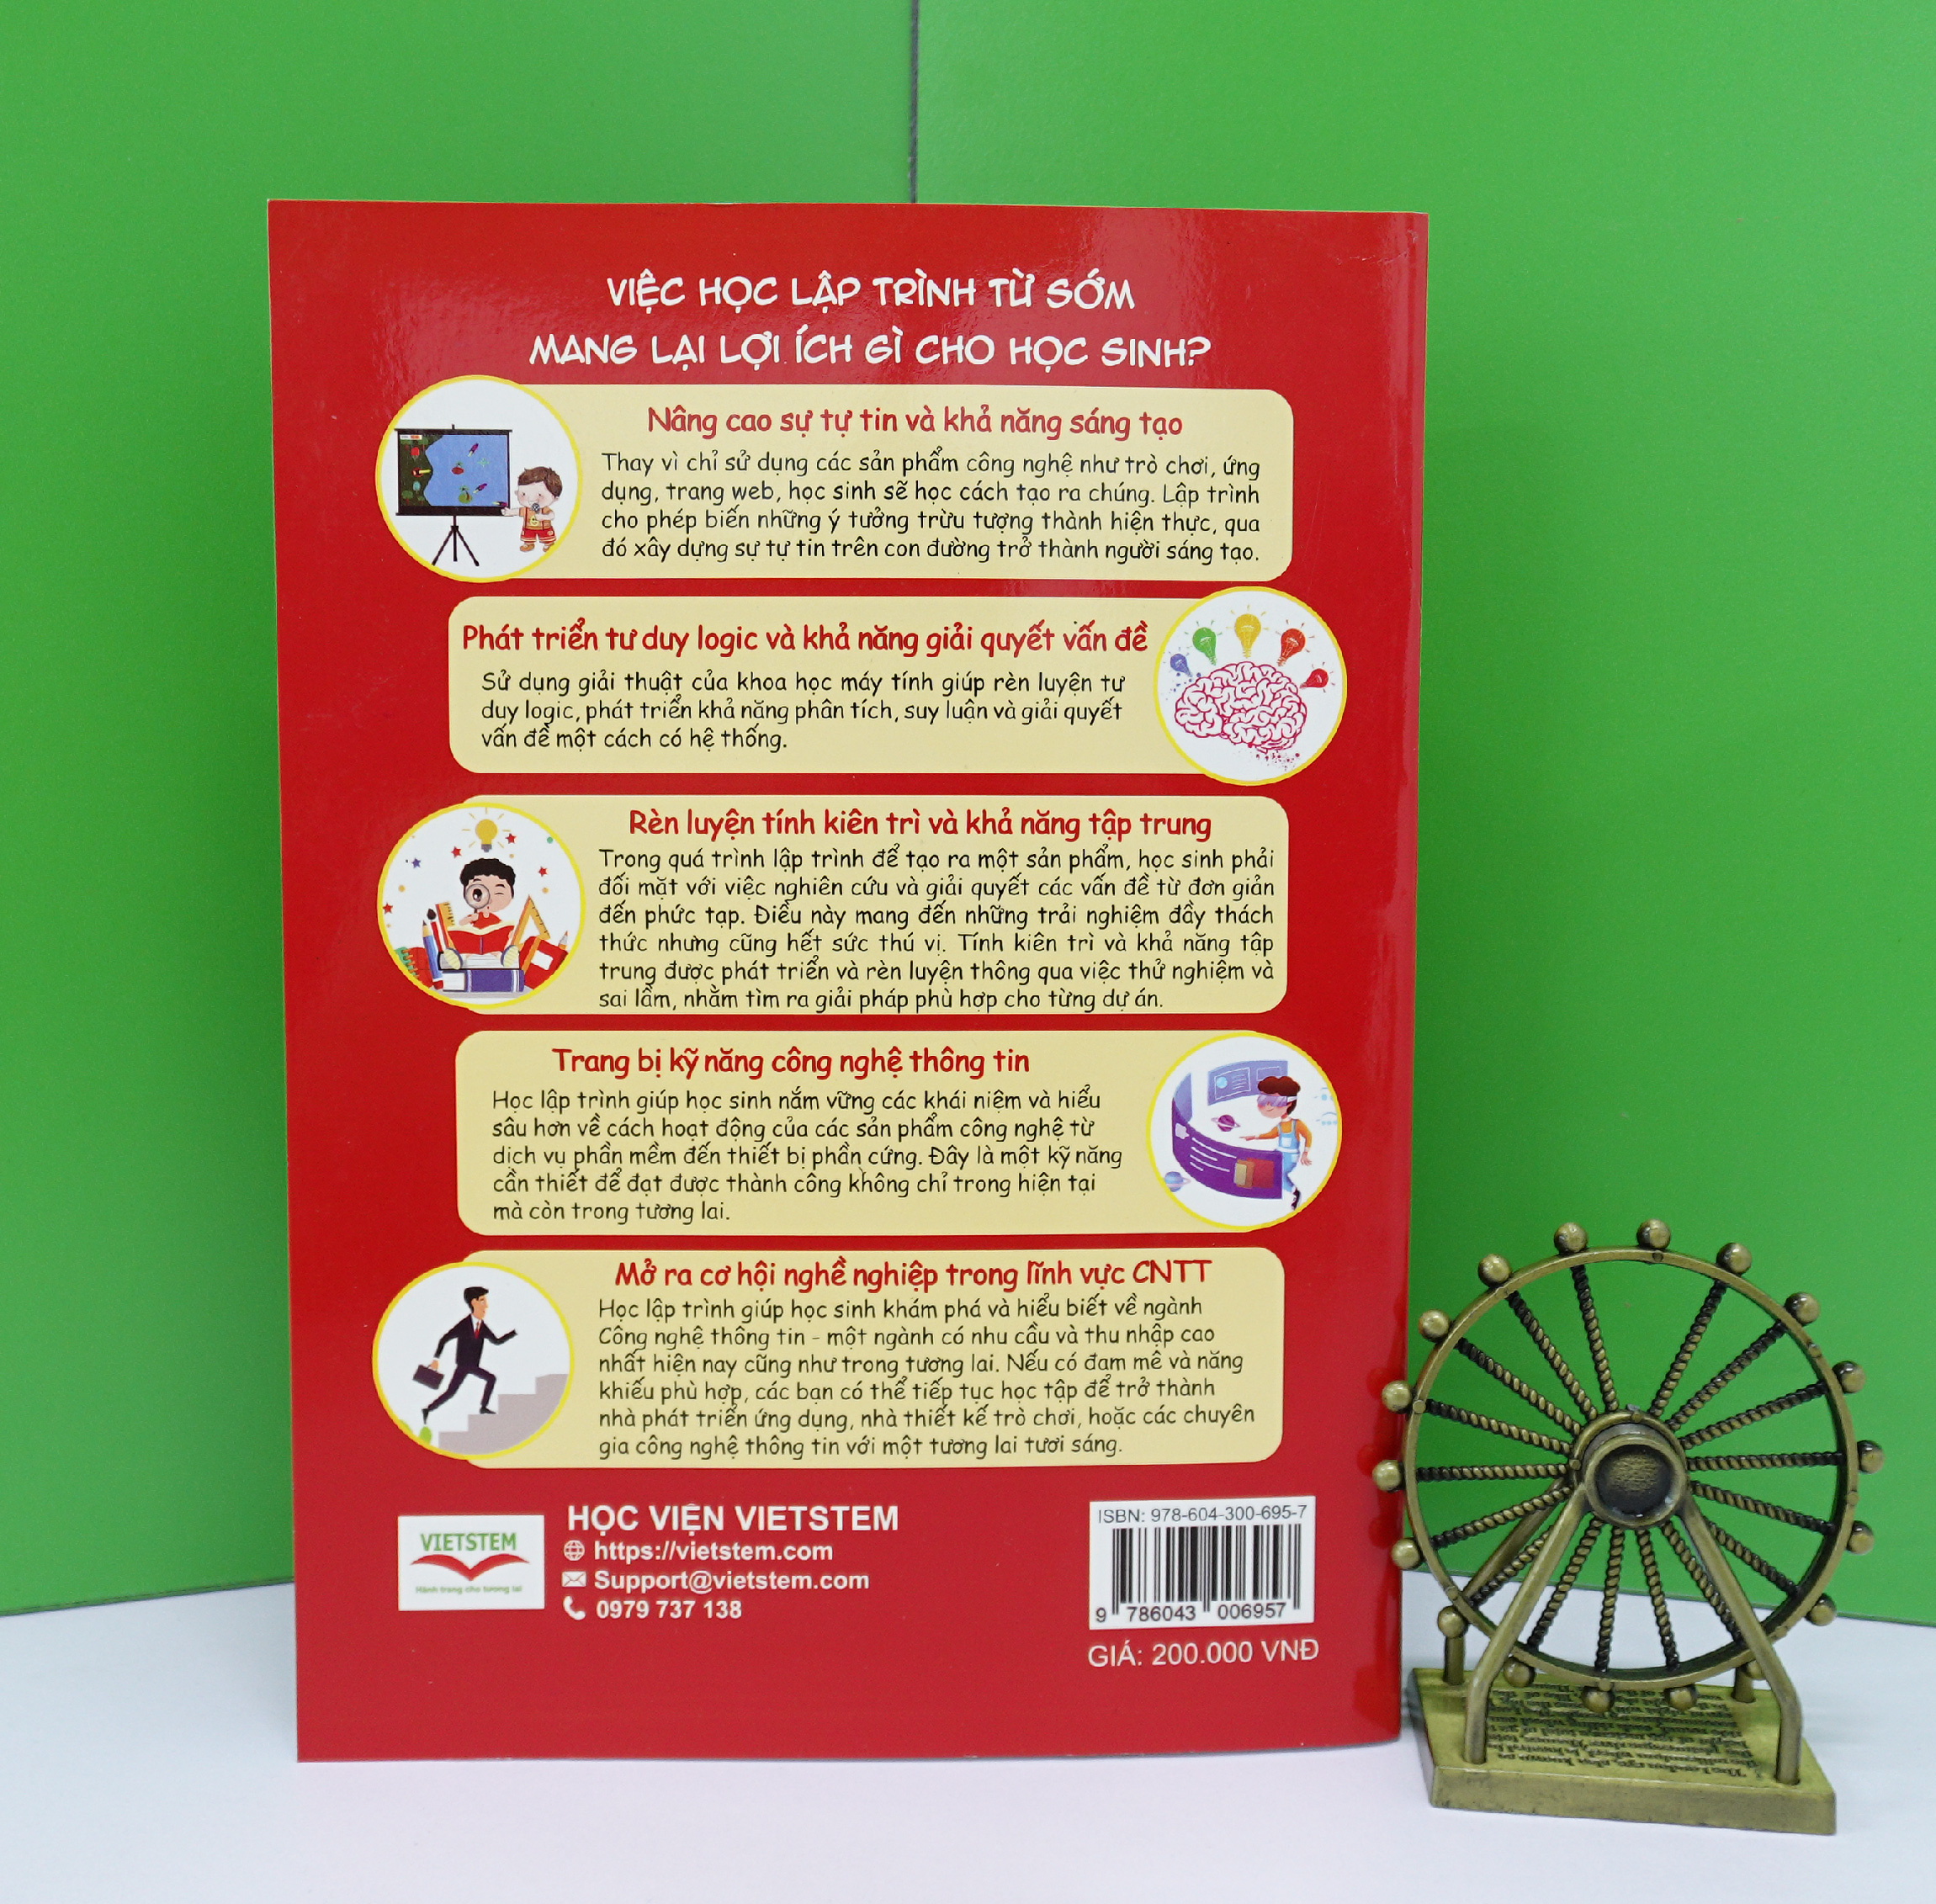 Bộ sách hướng dẫn học lập trình Scratch cho học sinh lớp 3